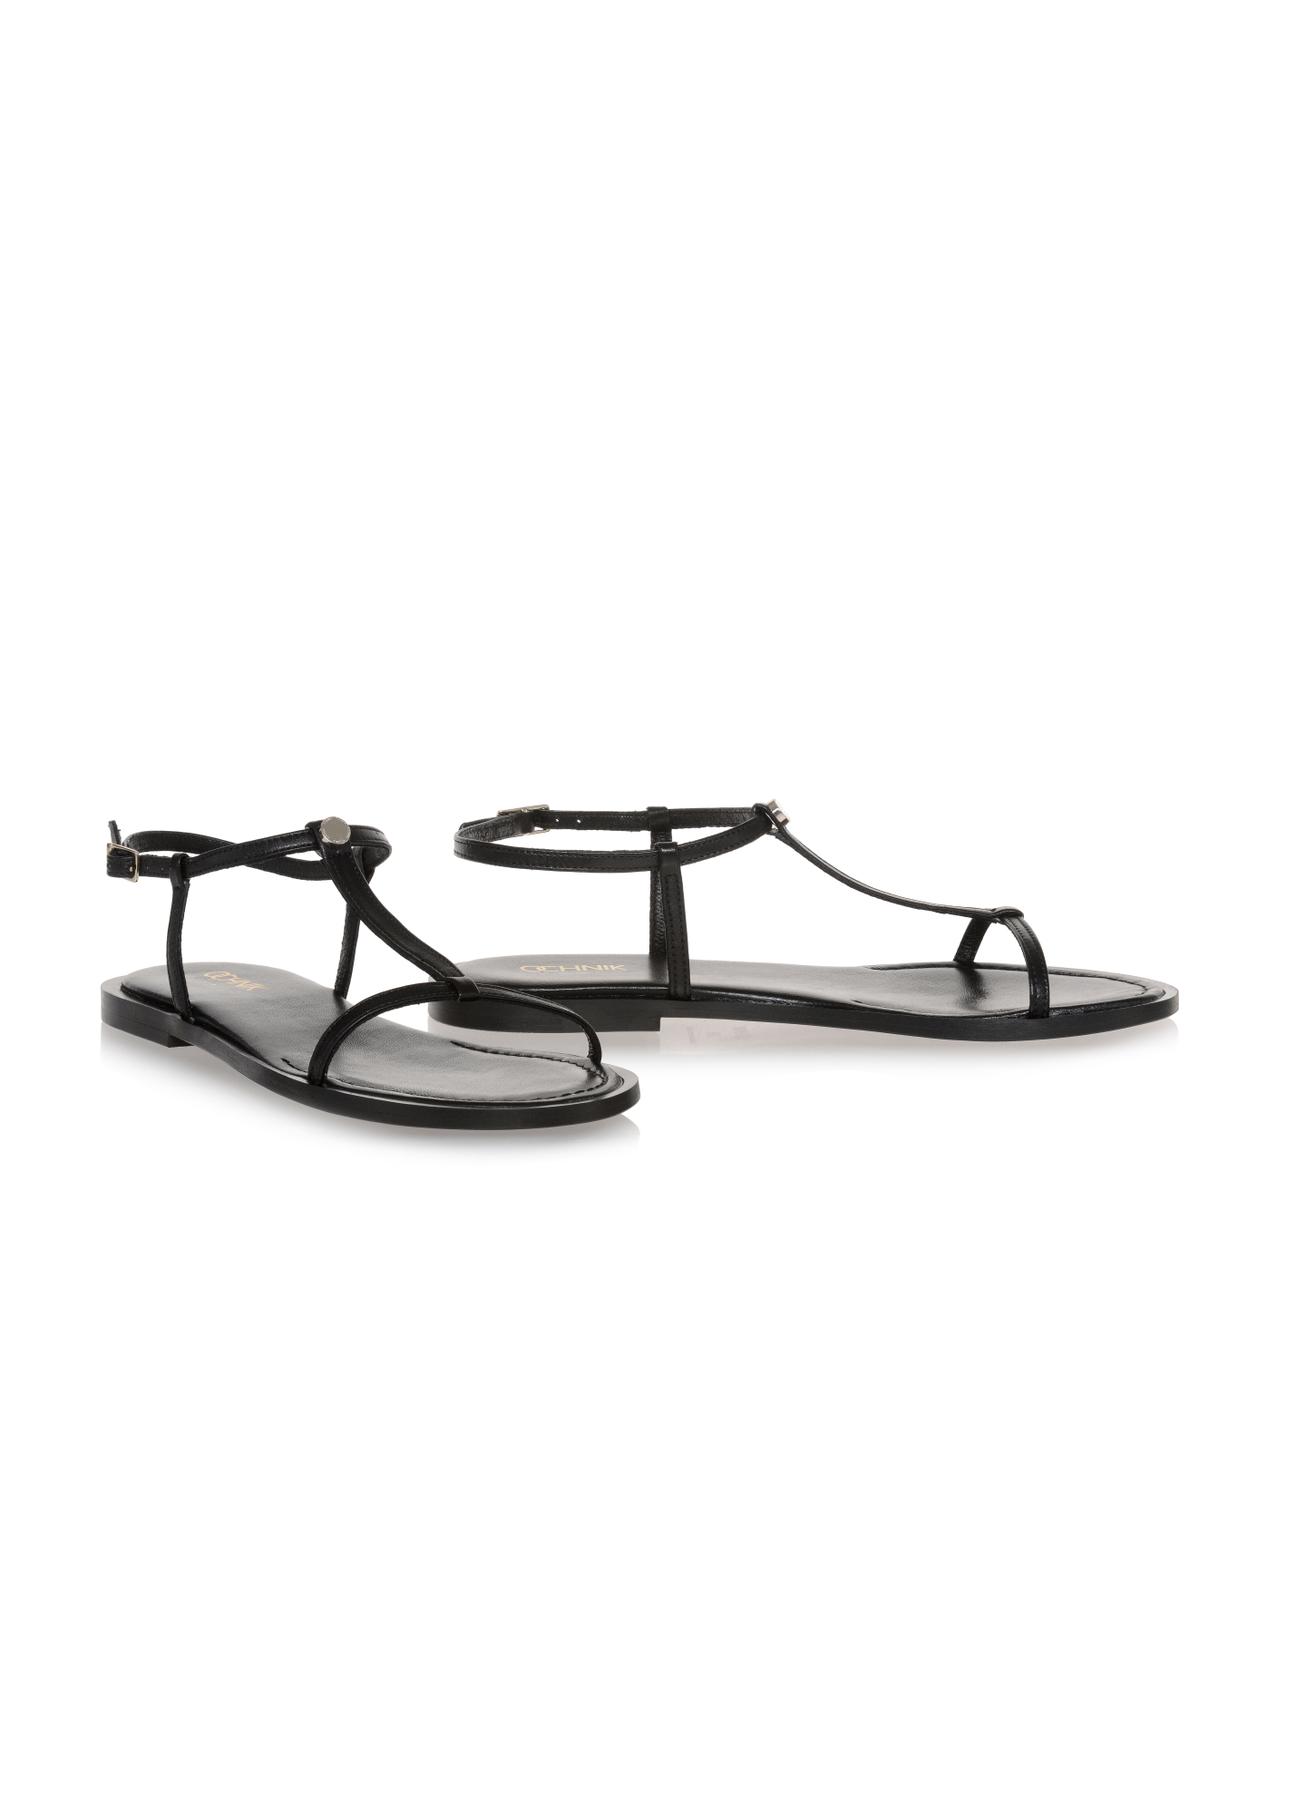 Czarne skórzane sandały płaskie damskie BUTYD-0999-99(W23)